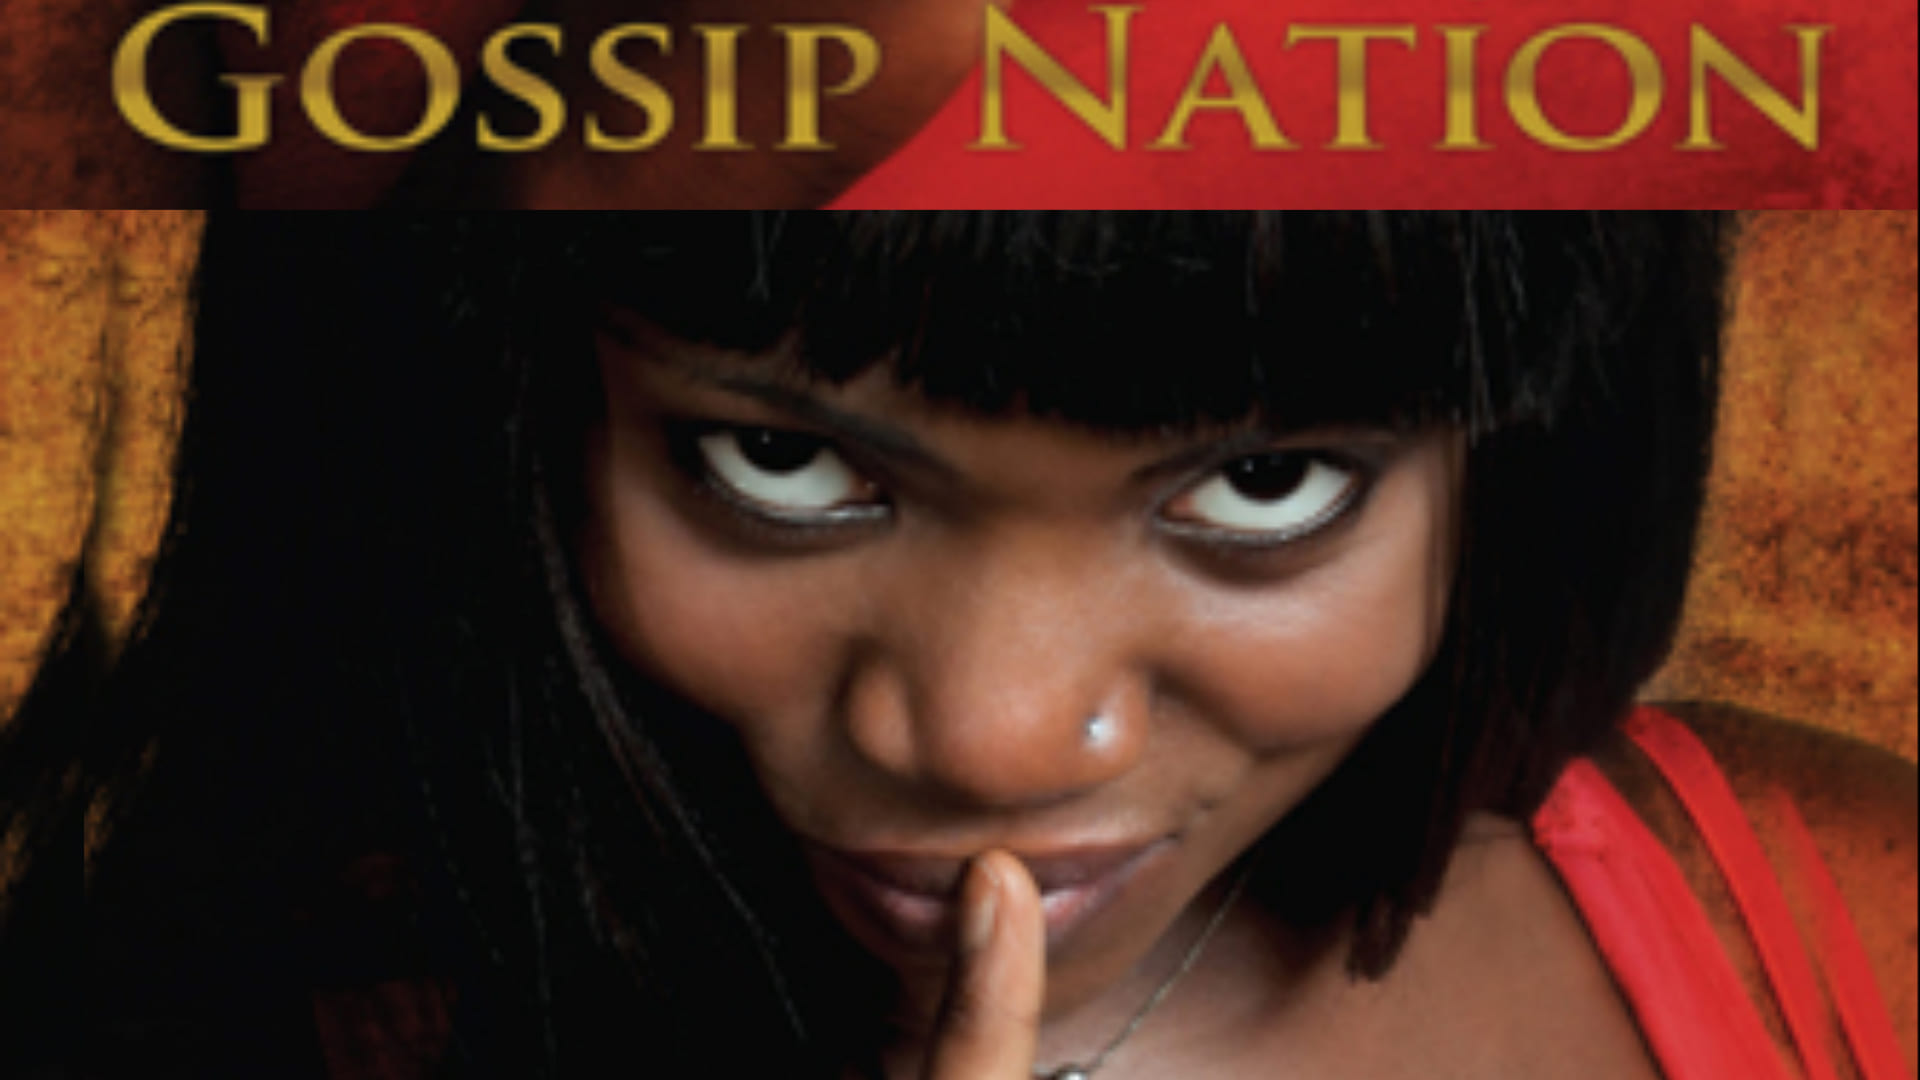 Gossip Nation